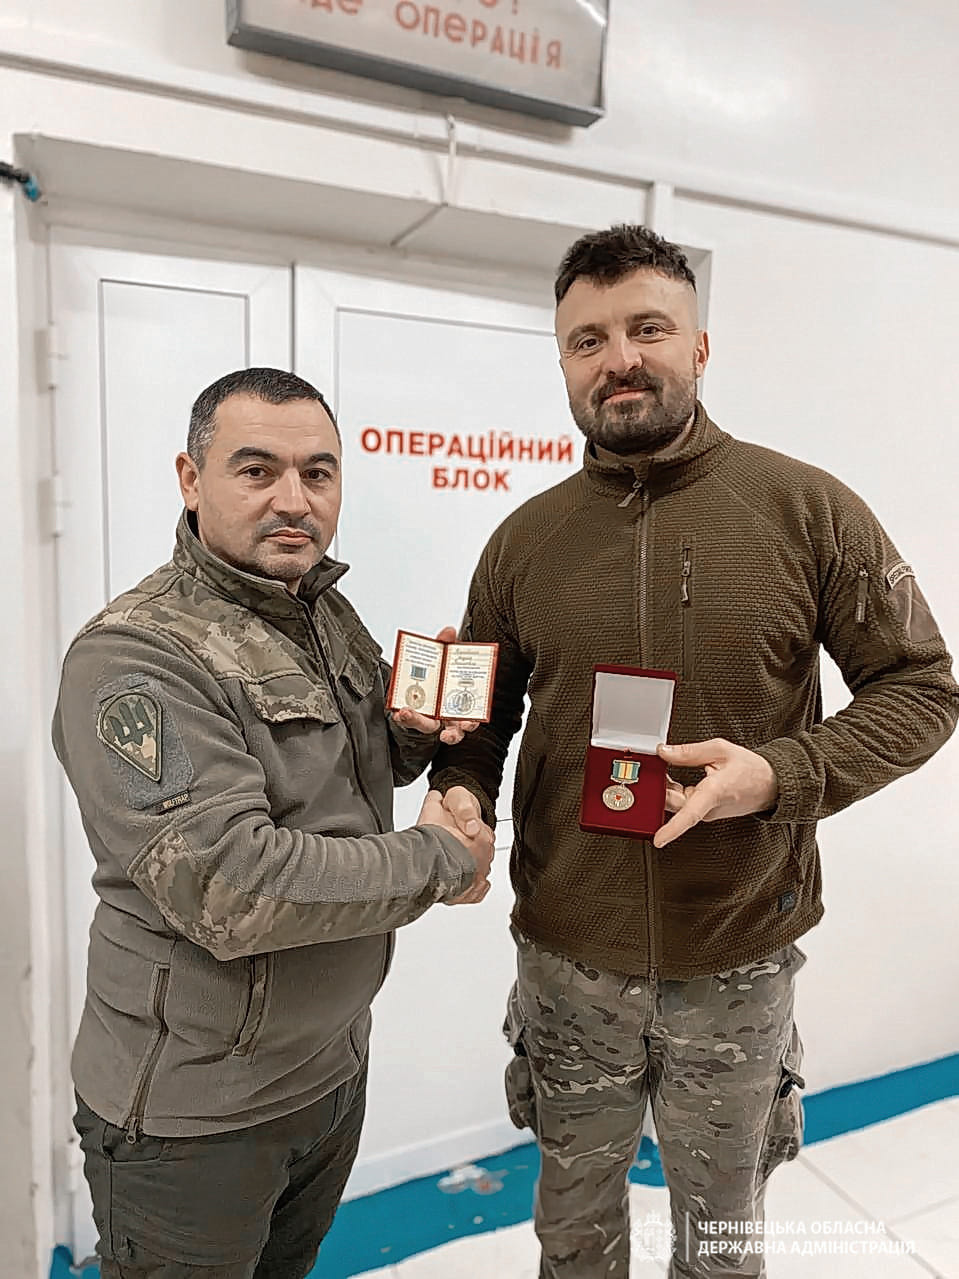 Буковинські бойові медики отримали нагороди «За спасіння життя»